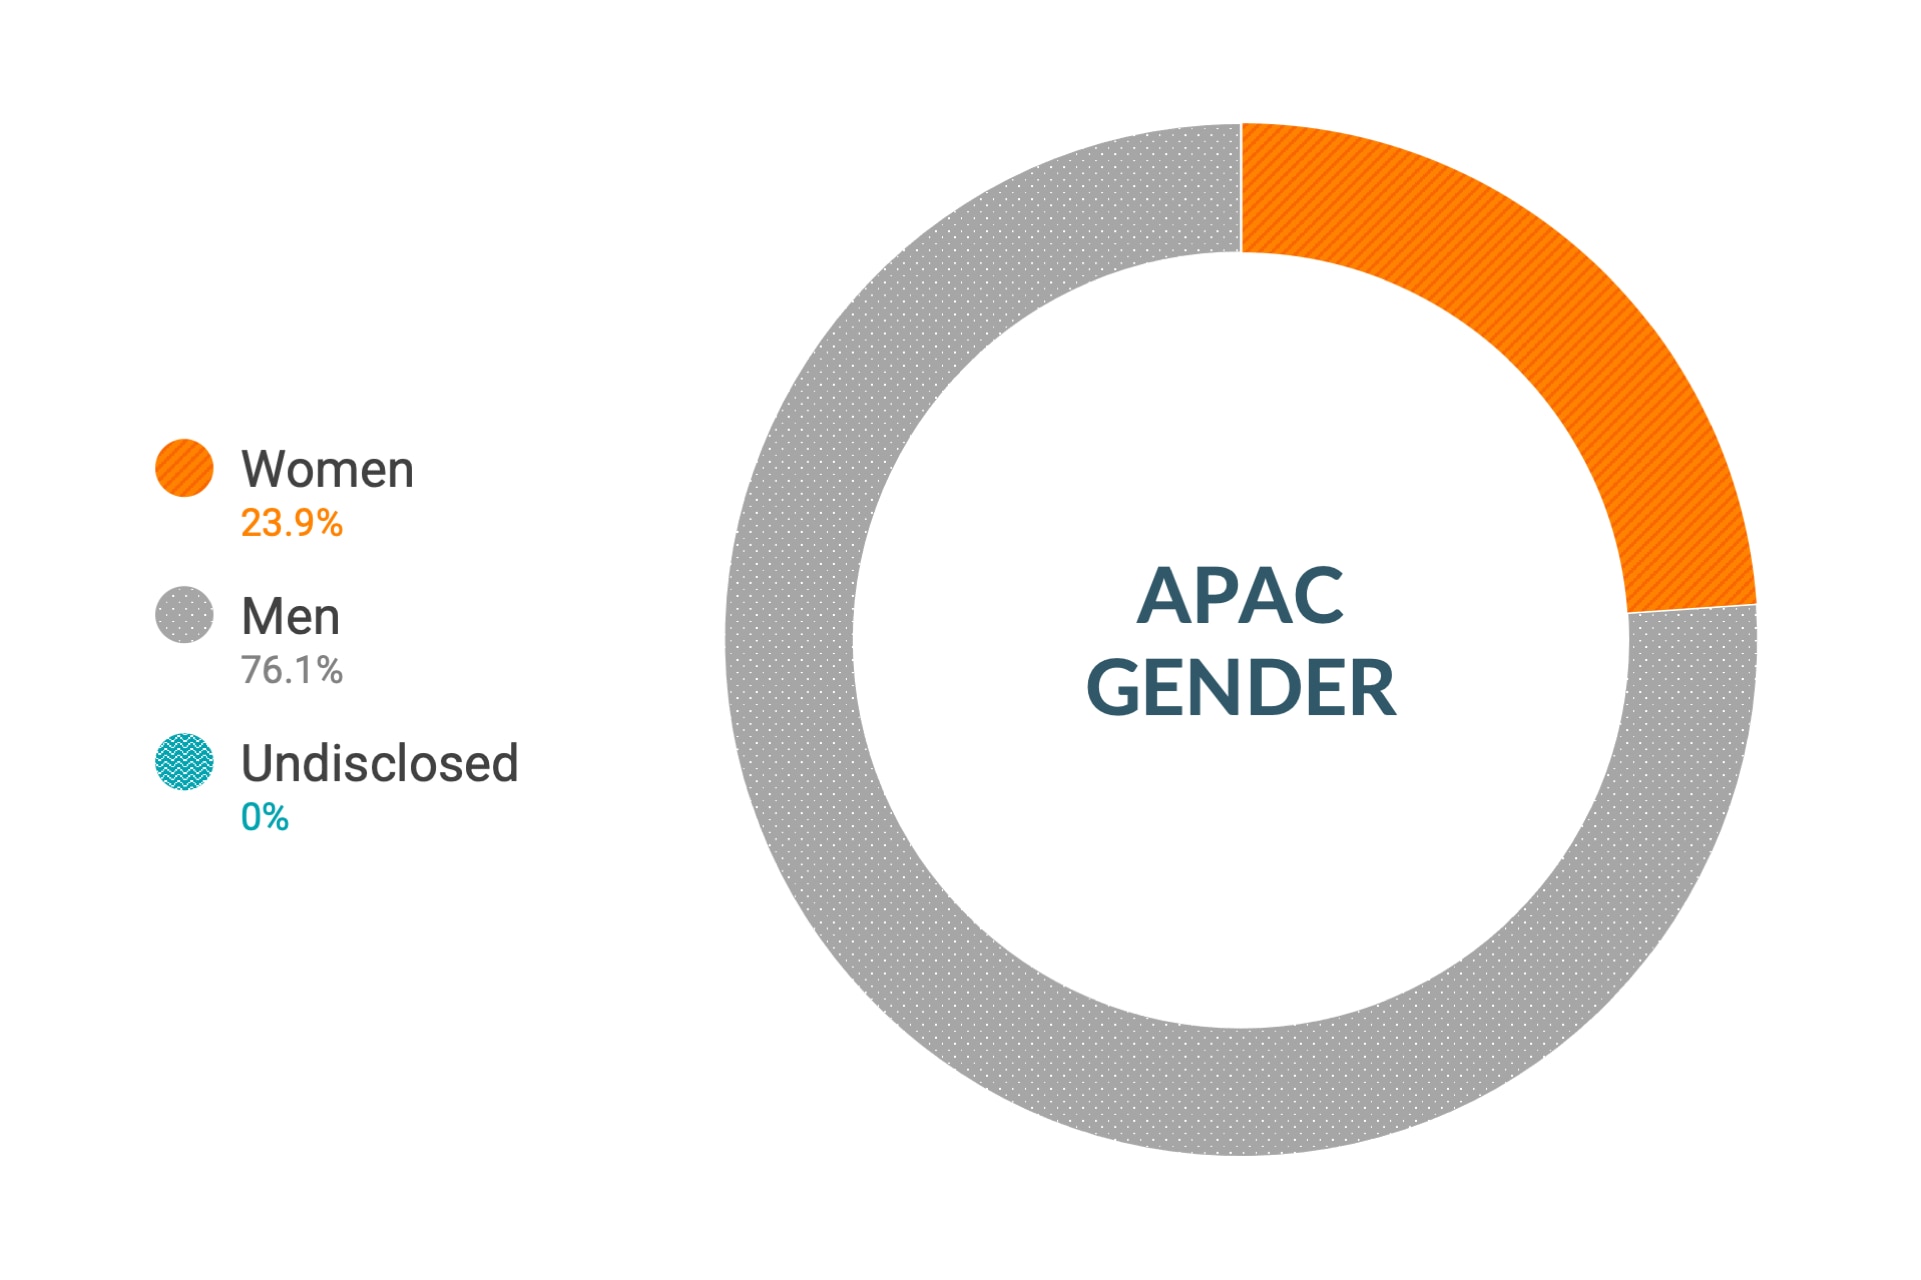 Dane firmy Cloudera dotyczące różnorodności i integracji dla płci w regionie Azji i Pacyfiku: kobiety 23%, mężczyźni 76%, nieujawnione 1%